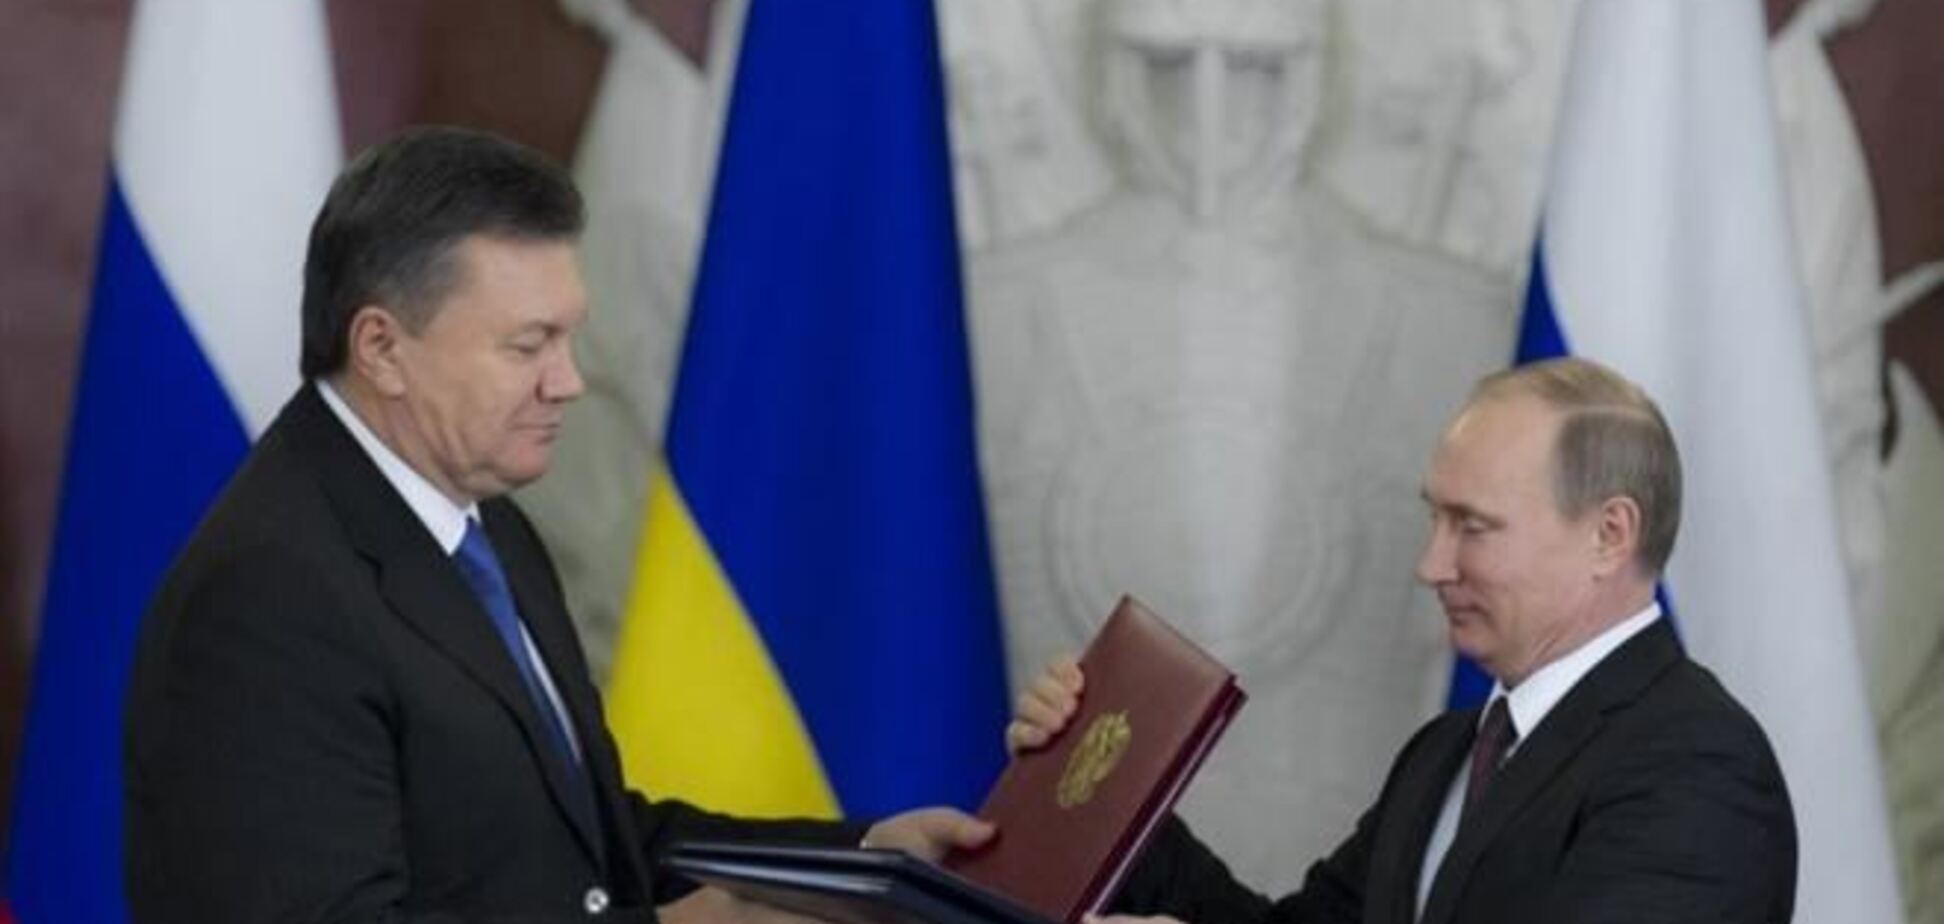 ЗМІ: протокол міждержкомісії Україна-РФ істотно змінила Москва